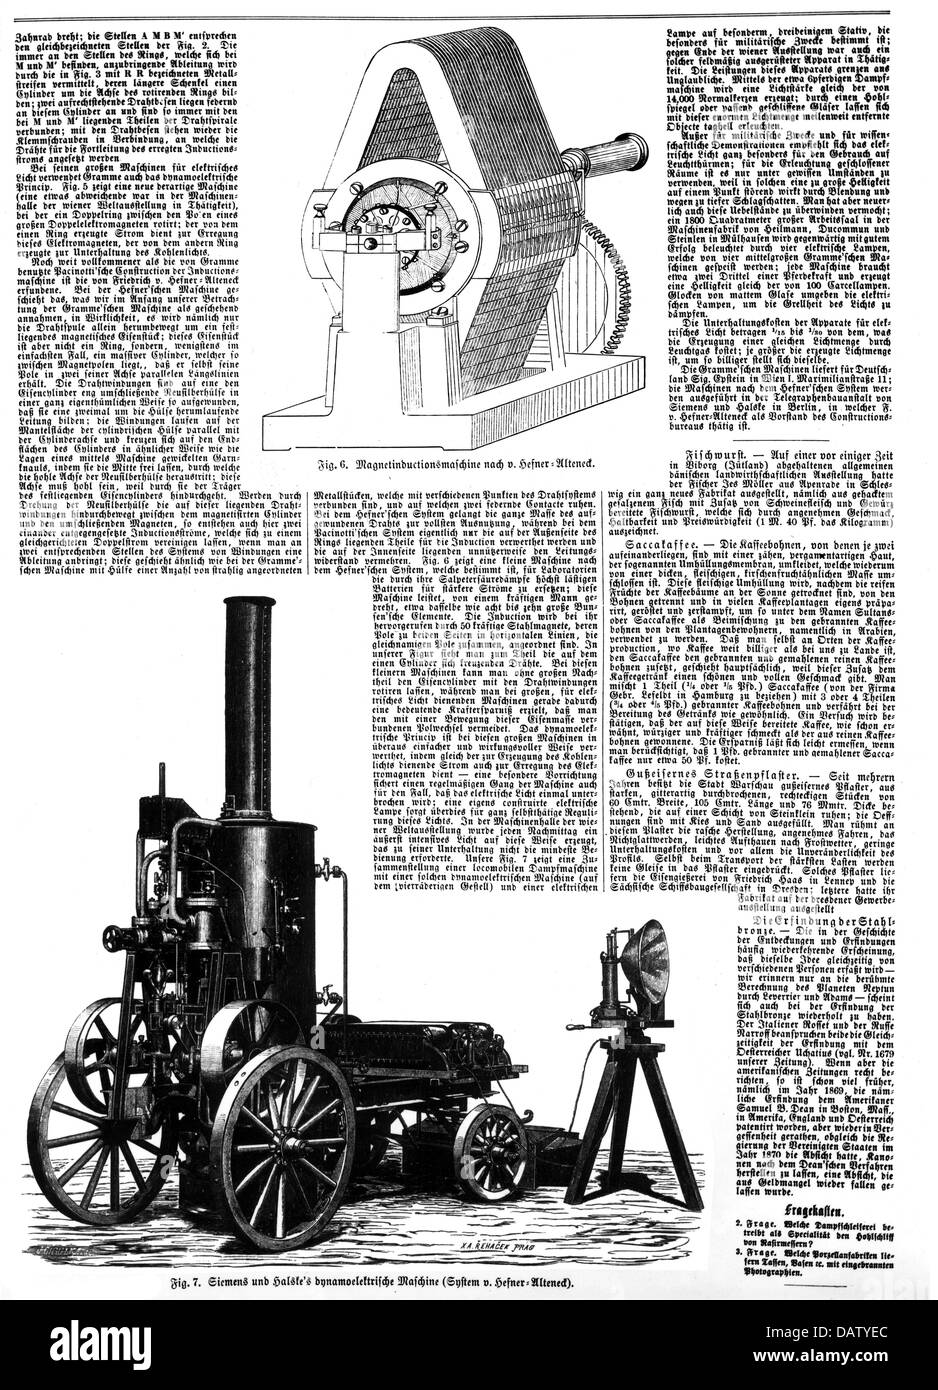 Siemens, Werner von, 13.3.1816 - 6.12.1892, German businessman and inventor, dynamoelectric engine by Siemens and Halste, 1866, Stock Photo